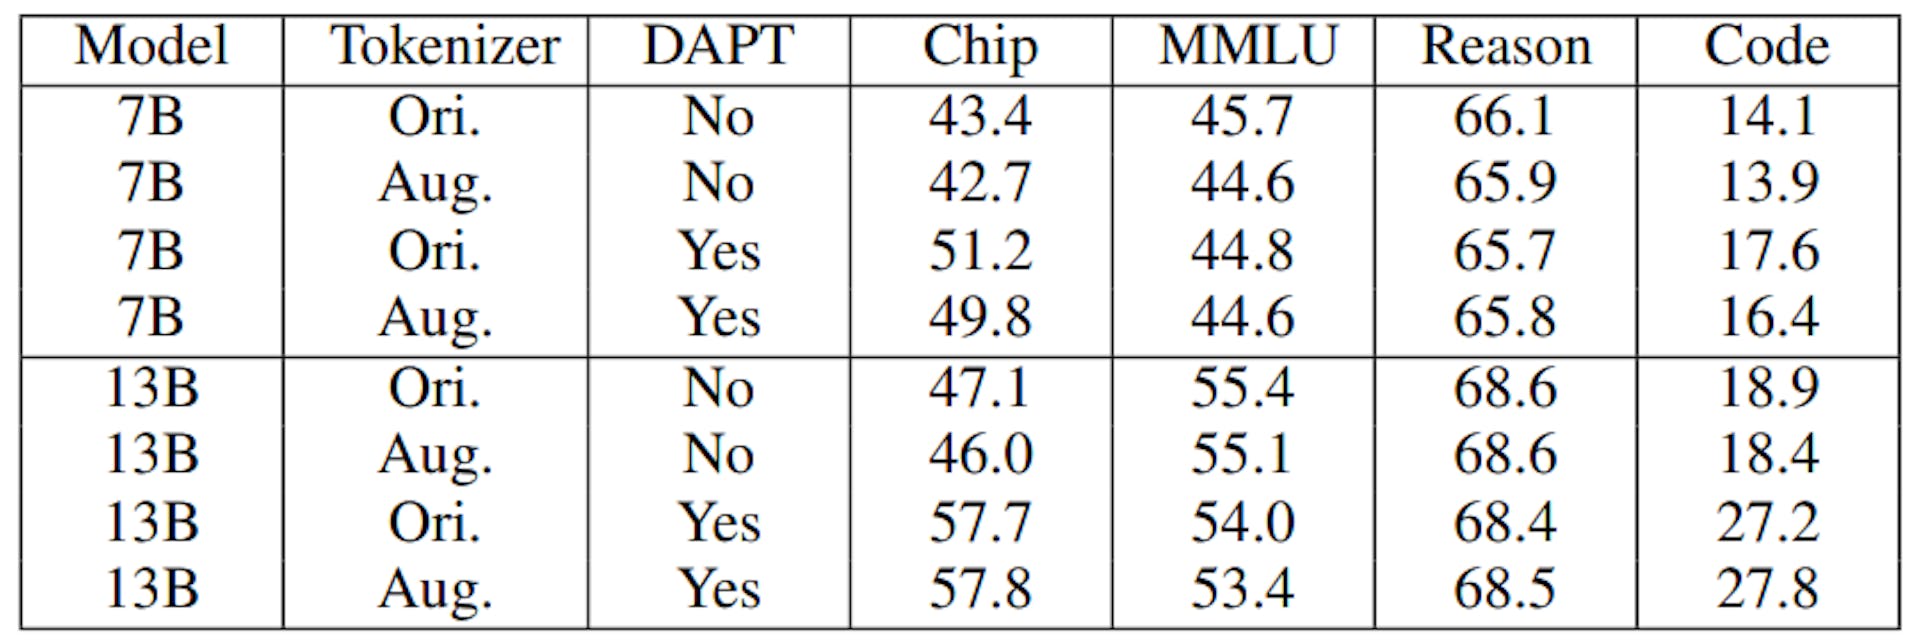 TABLO IX: Farklı Tokenizerlere Sahip ChipNeMo Modellerine İlişkin Değerlendirme Sonuçları. Ağustos, artırılmış tokenizer ve Ori'yi gösterir. LLaMA2 orijinal tokenizer'ın kullanıldığını belirtin. DAPT olmadan artırılmış tokenizer'ın kullanılması, Bölüm III-A'daki gibi modelin başlatılmasına karşılık gelir.